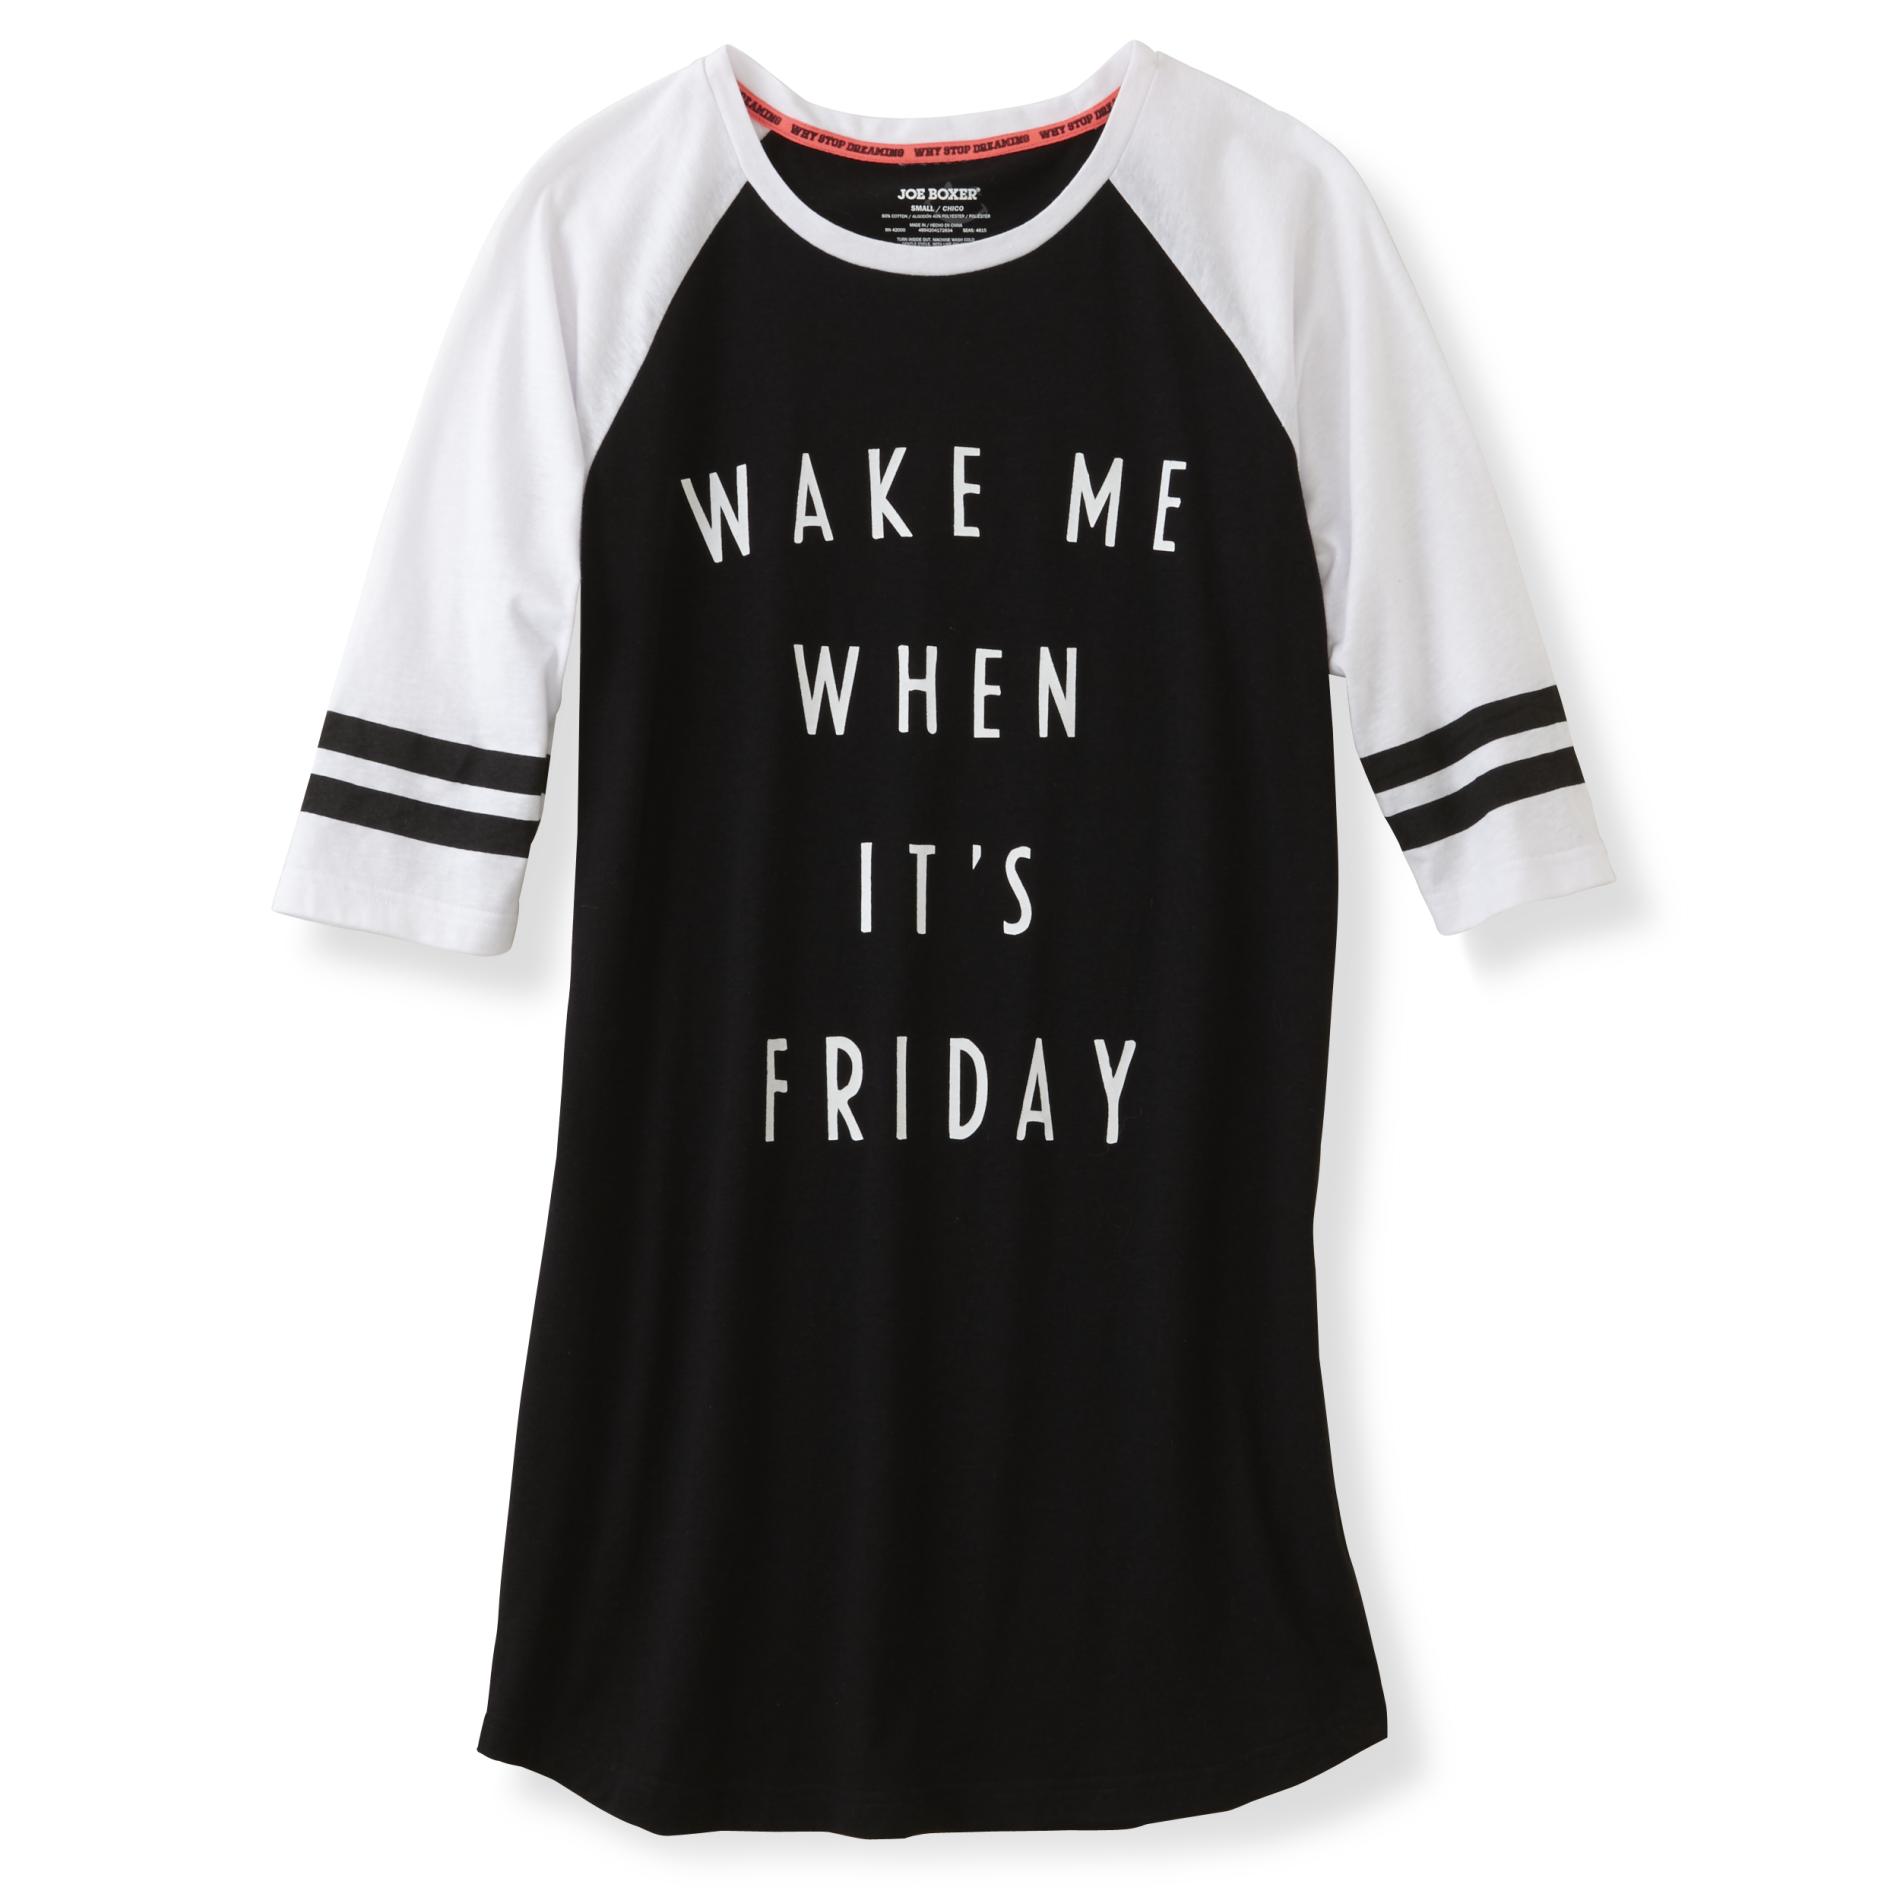 Joe Boxer Junior's Graphic Sleep Shirt - Wake Me on Friday